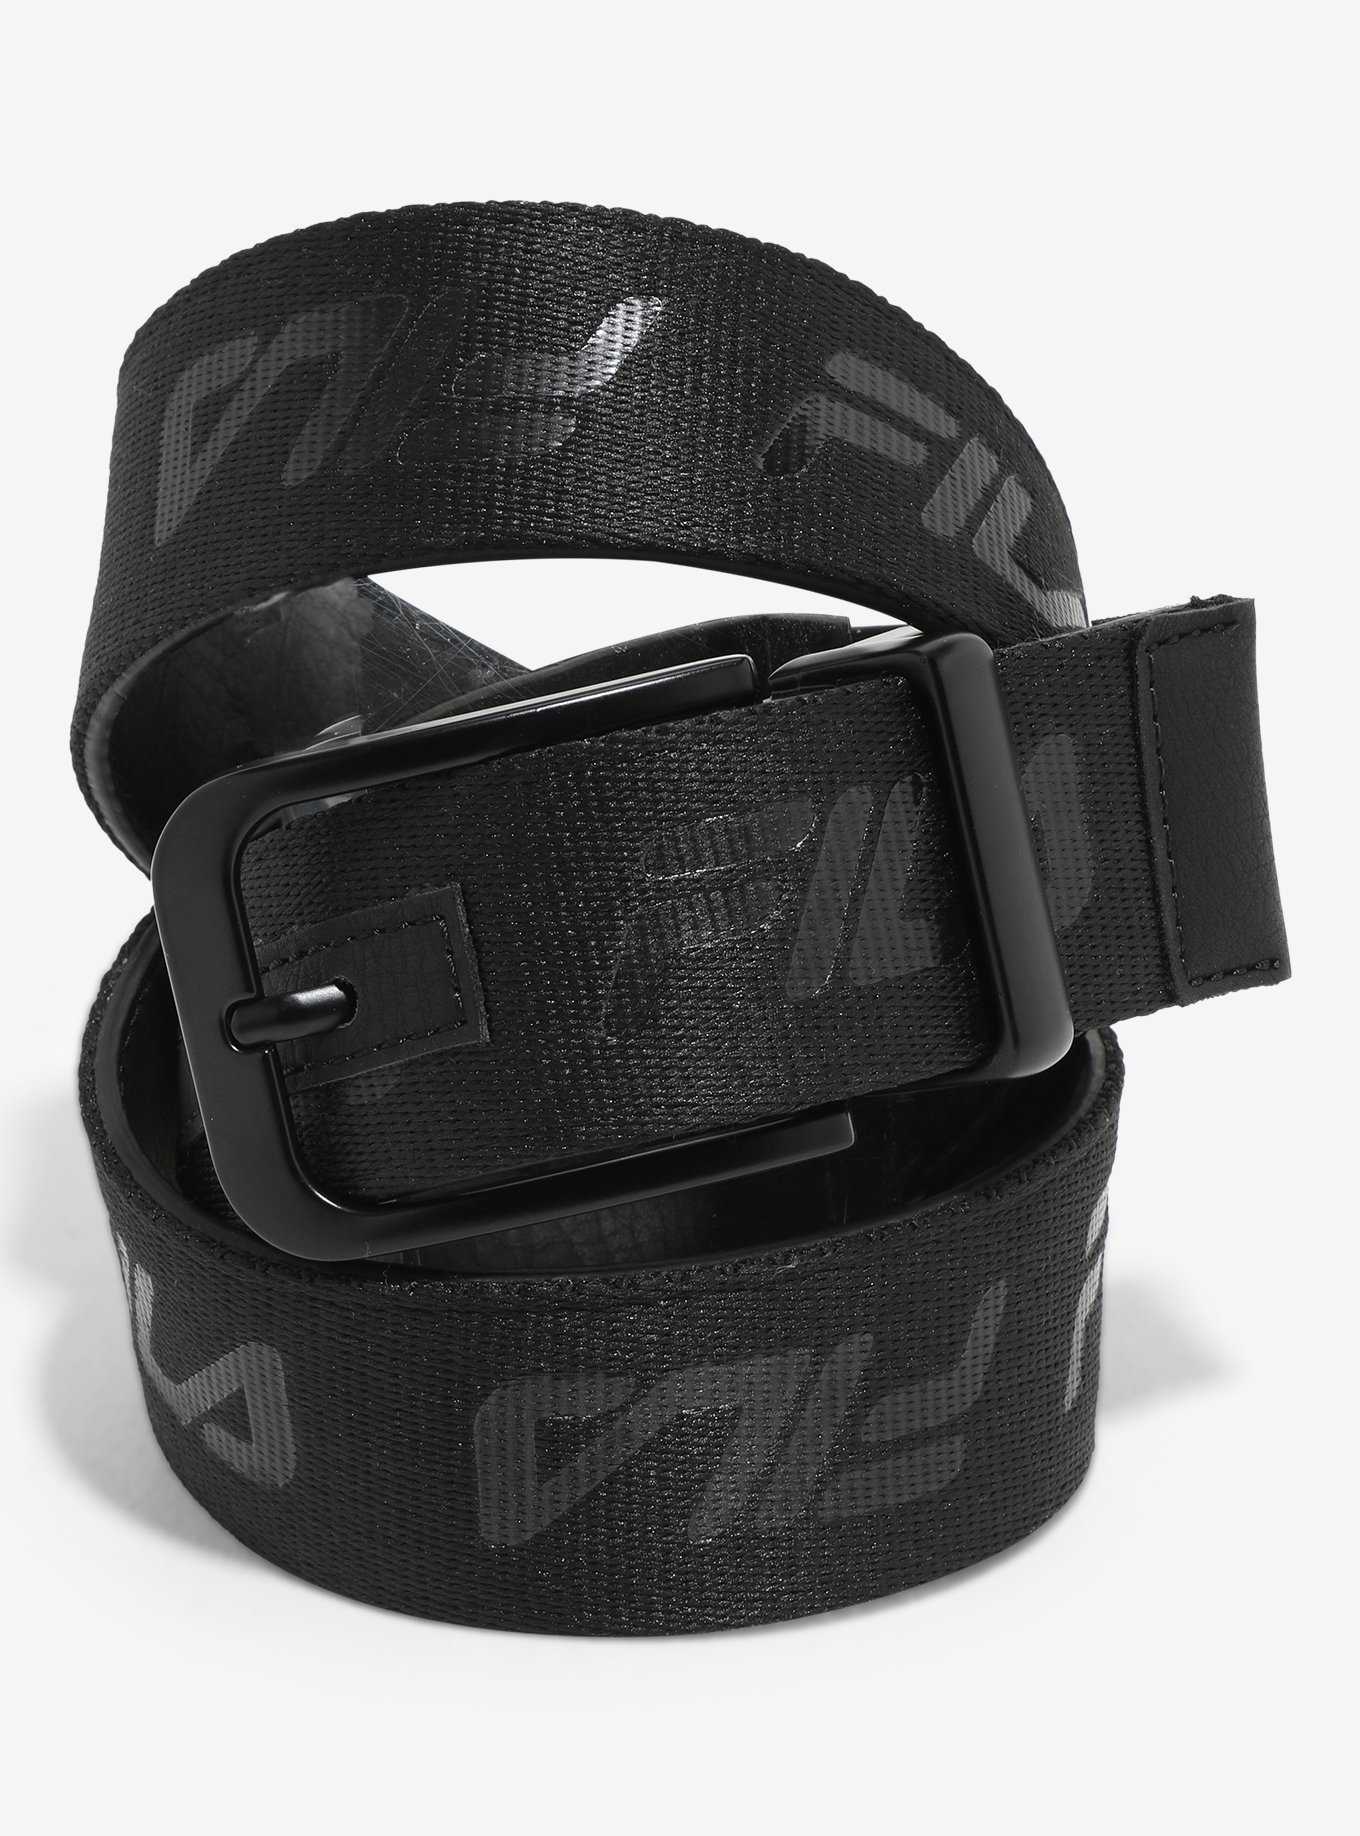 Belt Belt Mens Dress Women 's Corset Belt Tops Lace Up Waist Belt Strapless Underbust  Corset Belt Carry Money (Color : Black, Size : One Size) : :  Clothing, Shoes & Accessories